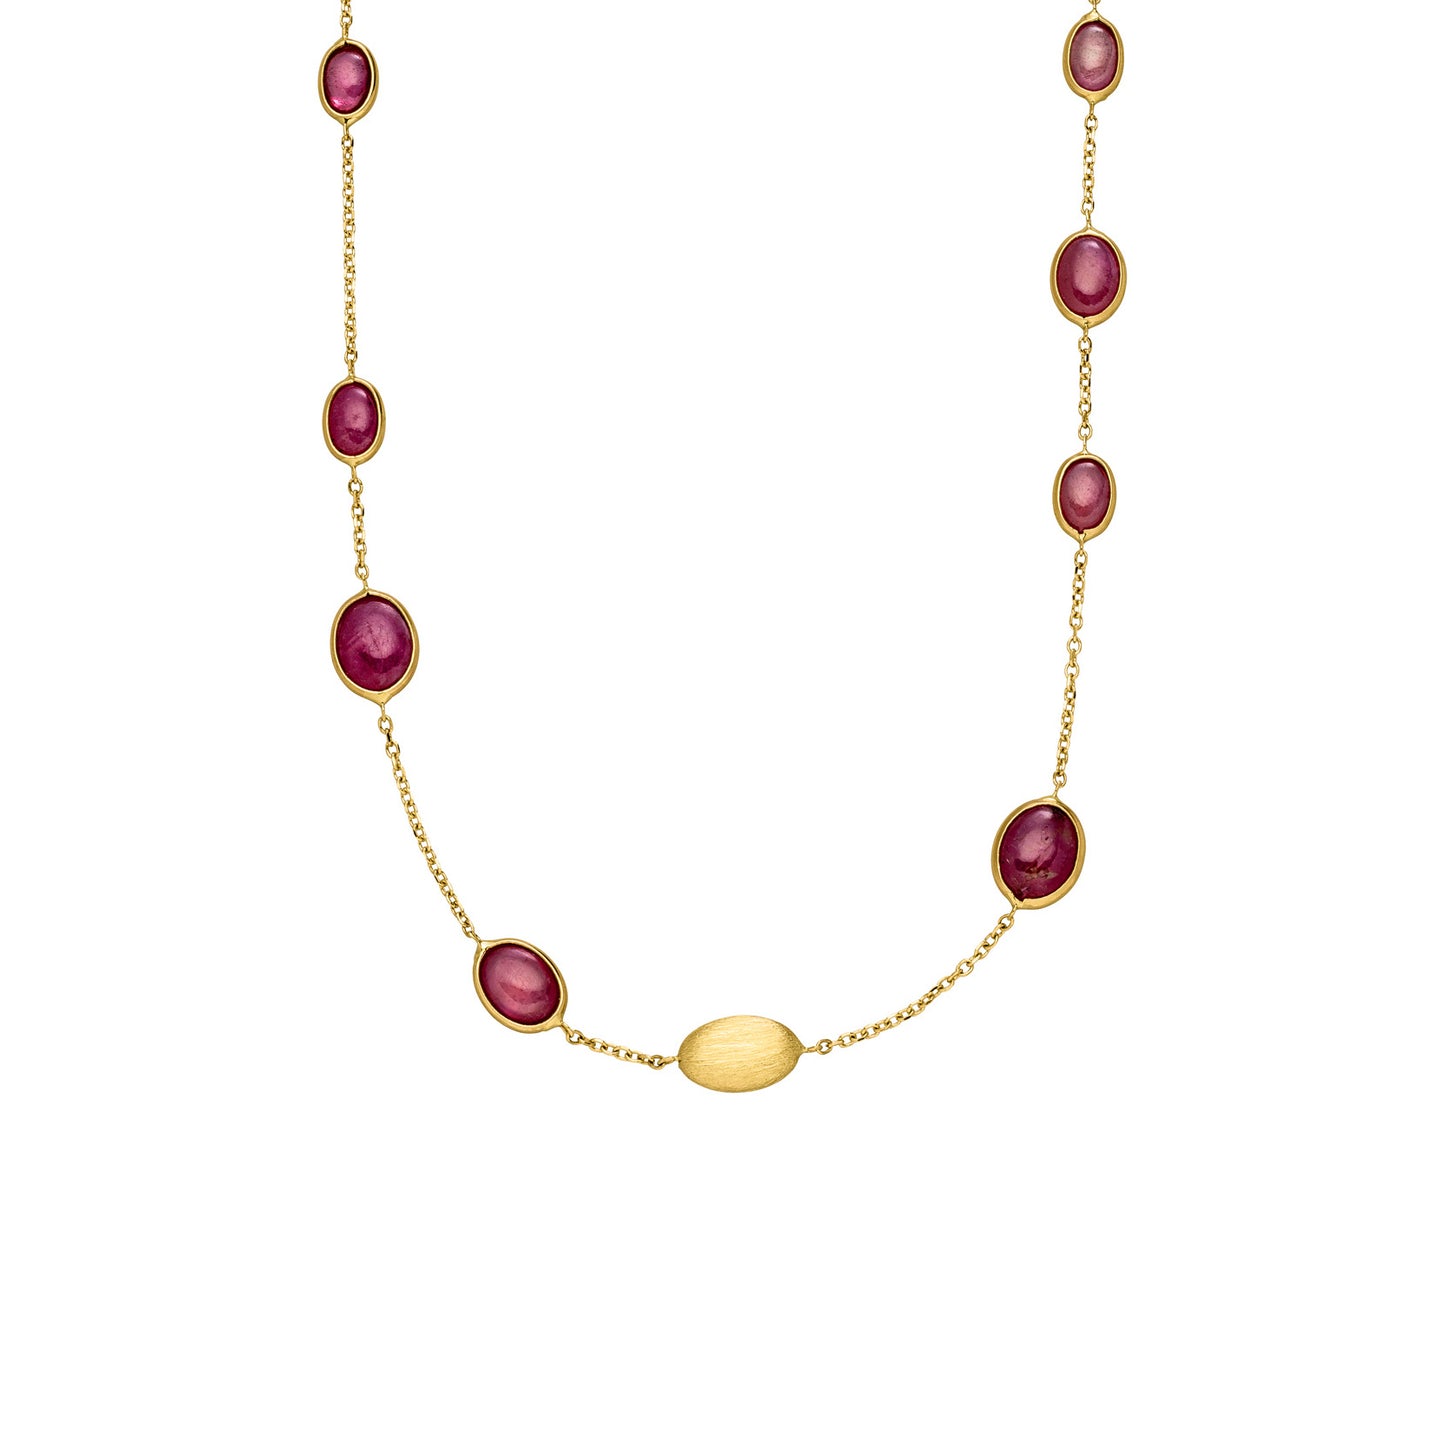 ELAINE FIRENZE - Halskette in Gold mit Rubinen